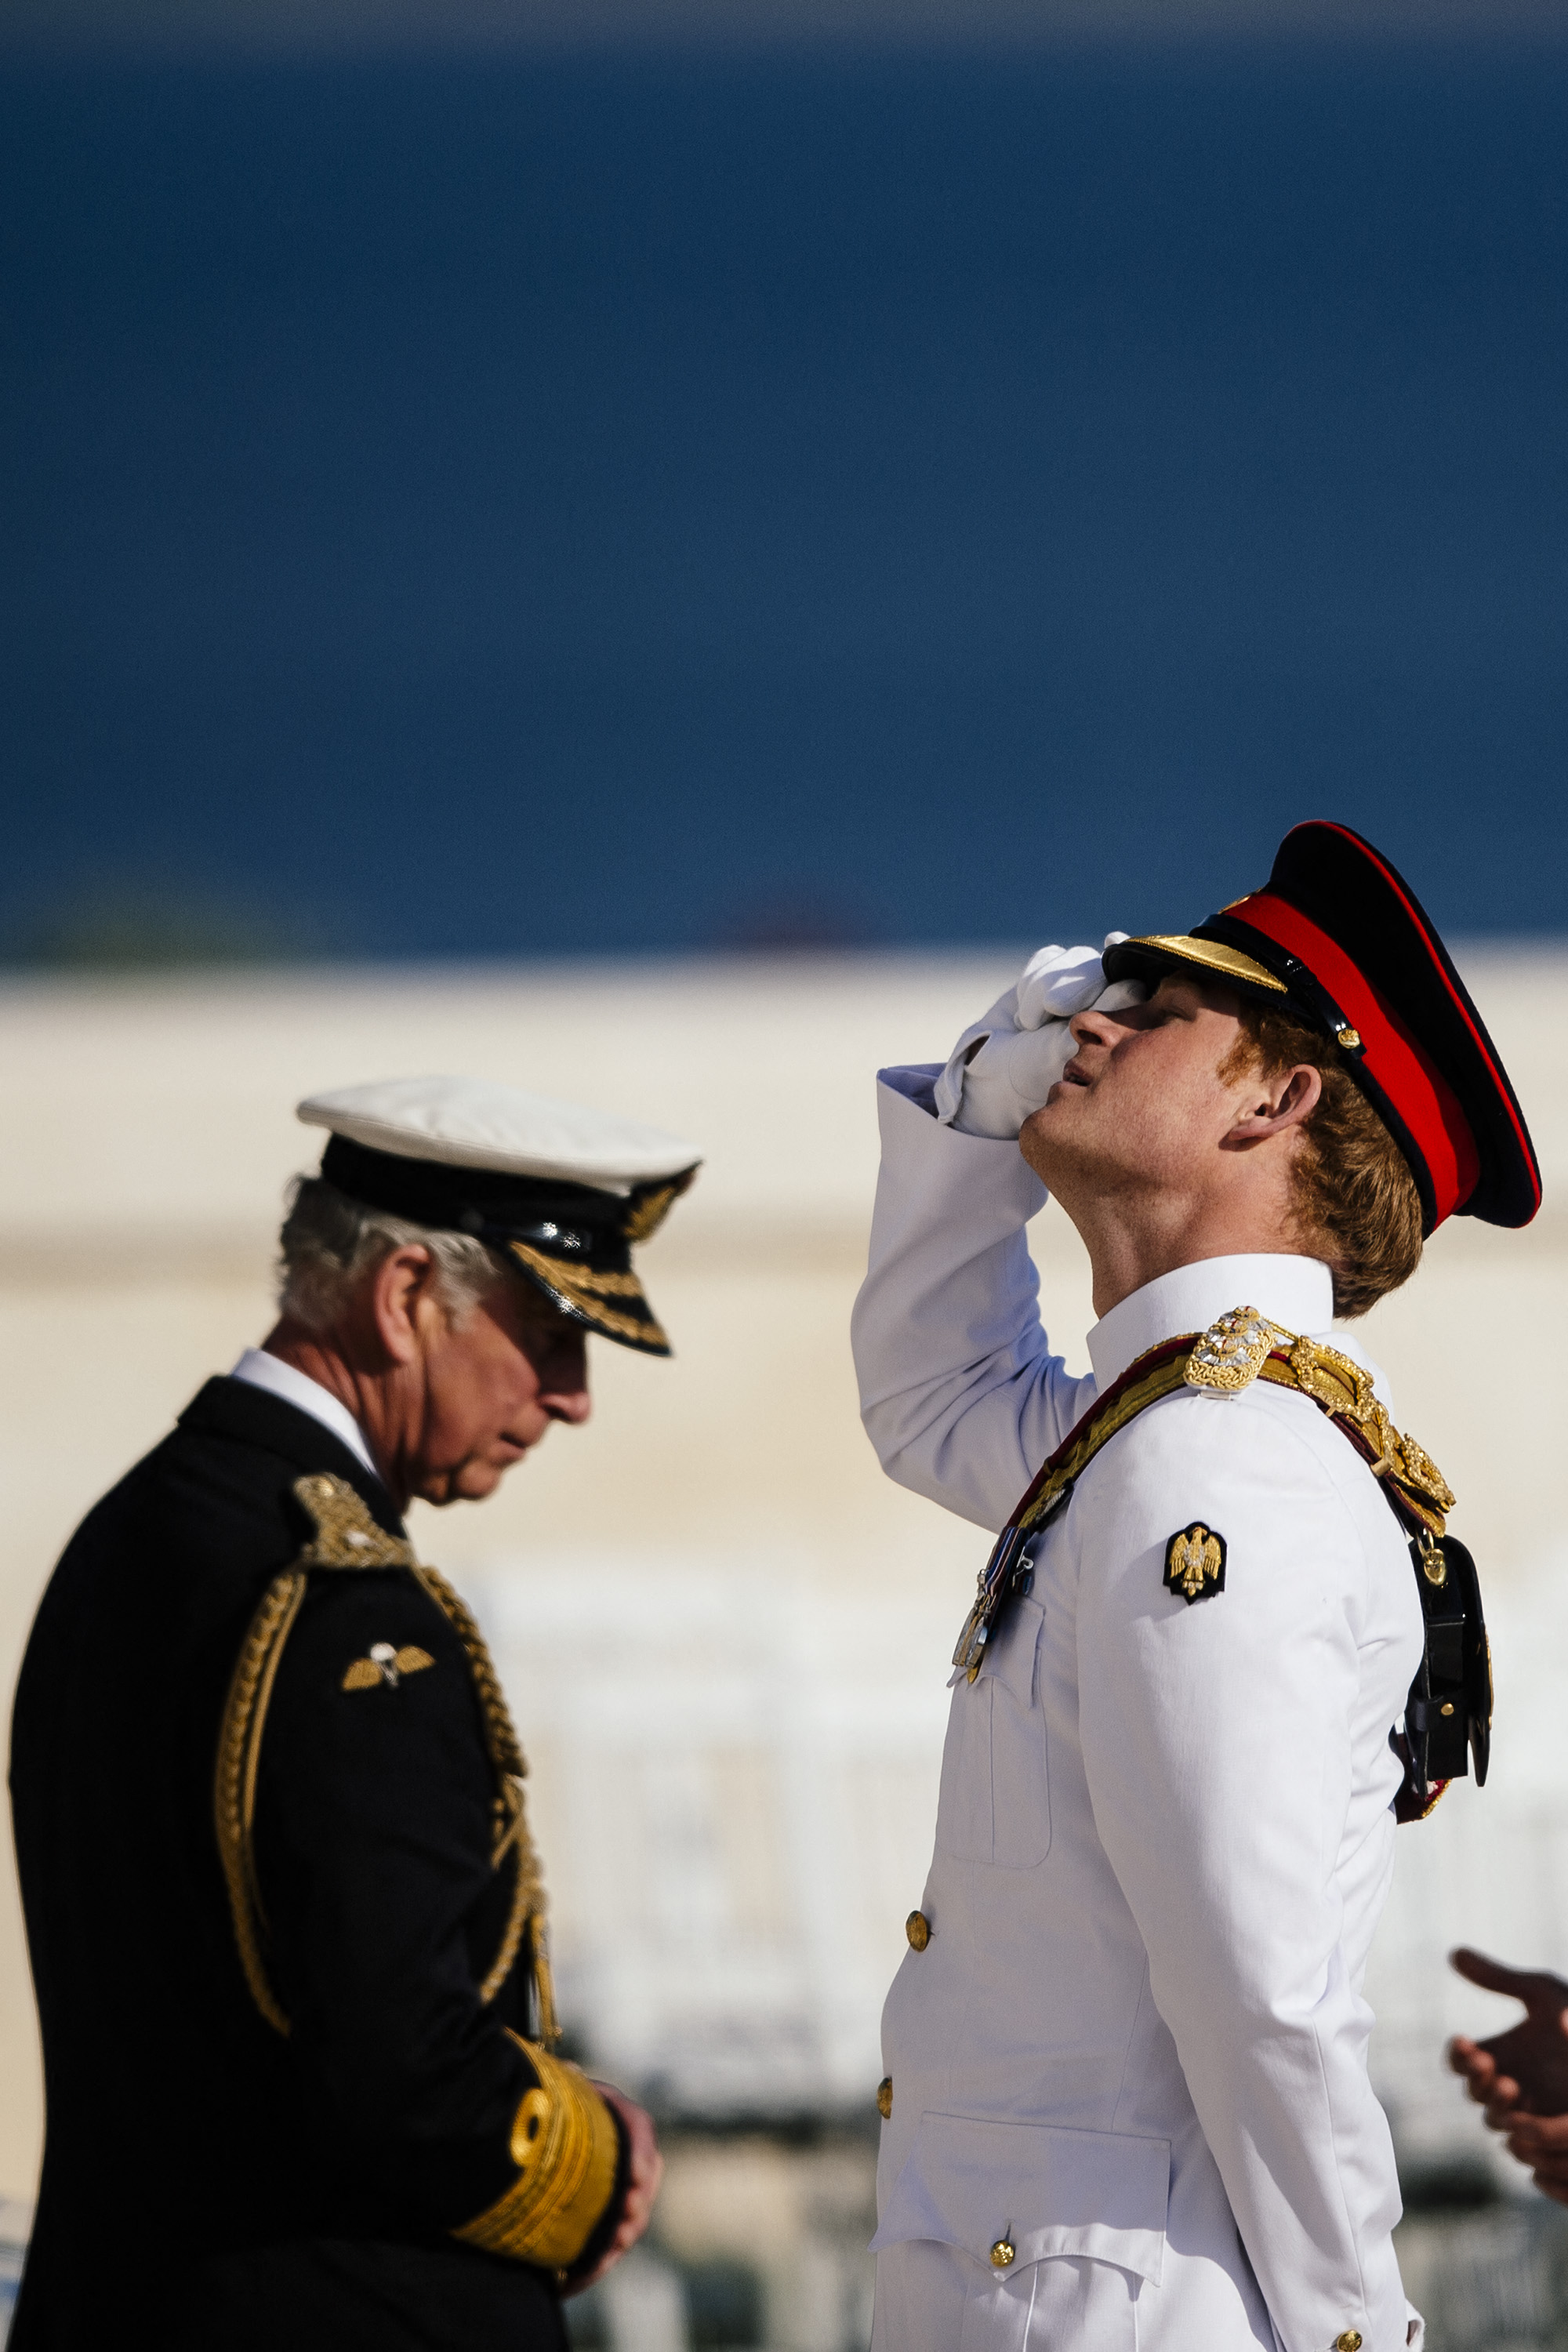 El rey Charles III y el príncipe Harry asisten a un servicio conmemorativo del centenario del inicio de la Batalla de Galípoli en la península de Galípoli, Turquía, el 24 de abril de 2015 | Fuente: Getty Images